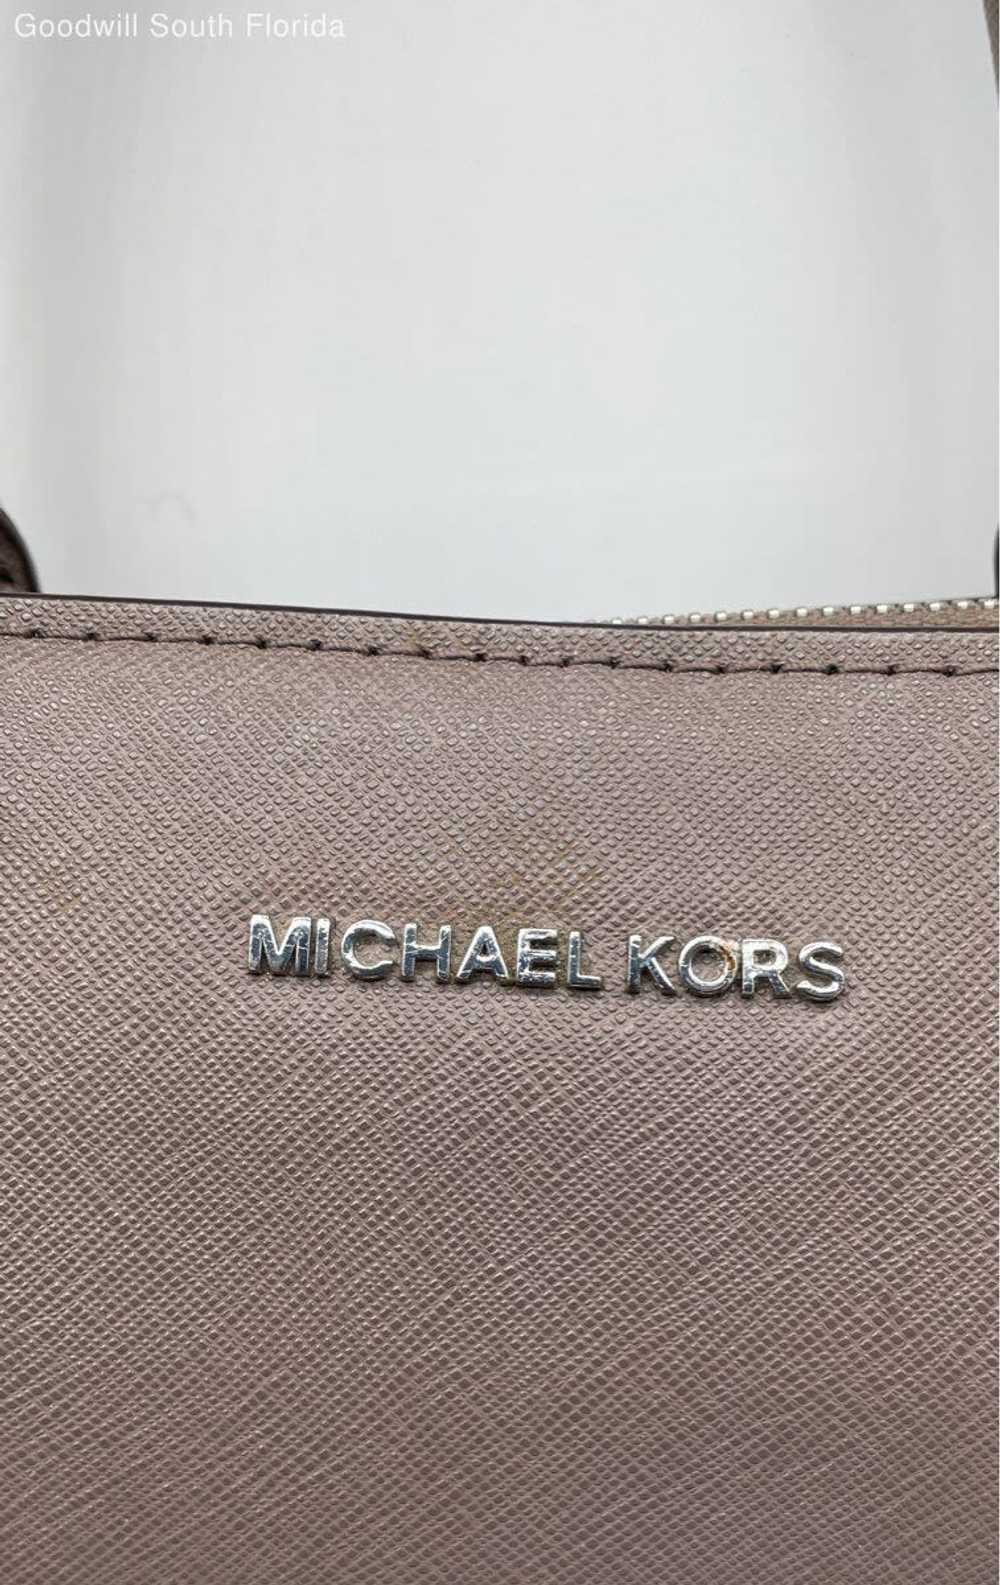 Michael Kors Womens Gray Handbag - image 3